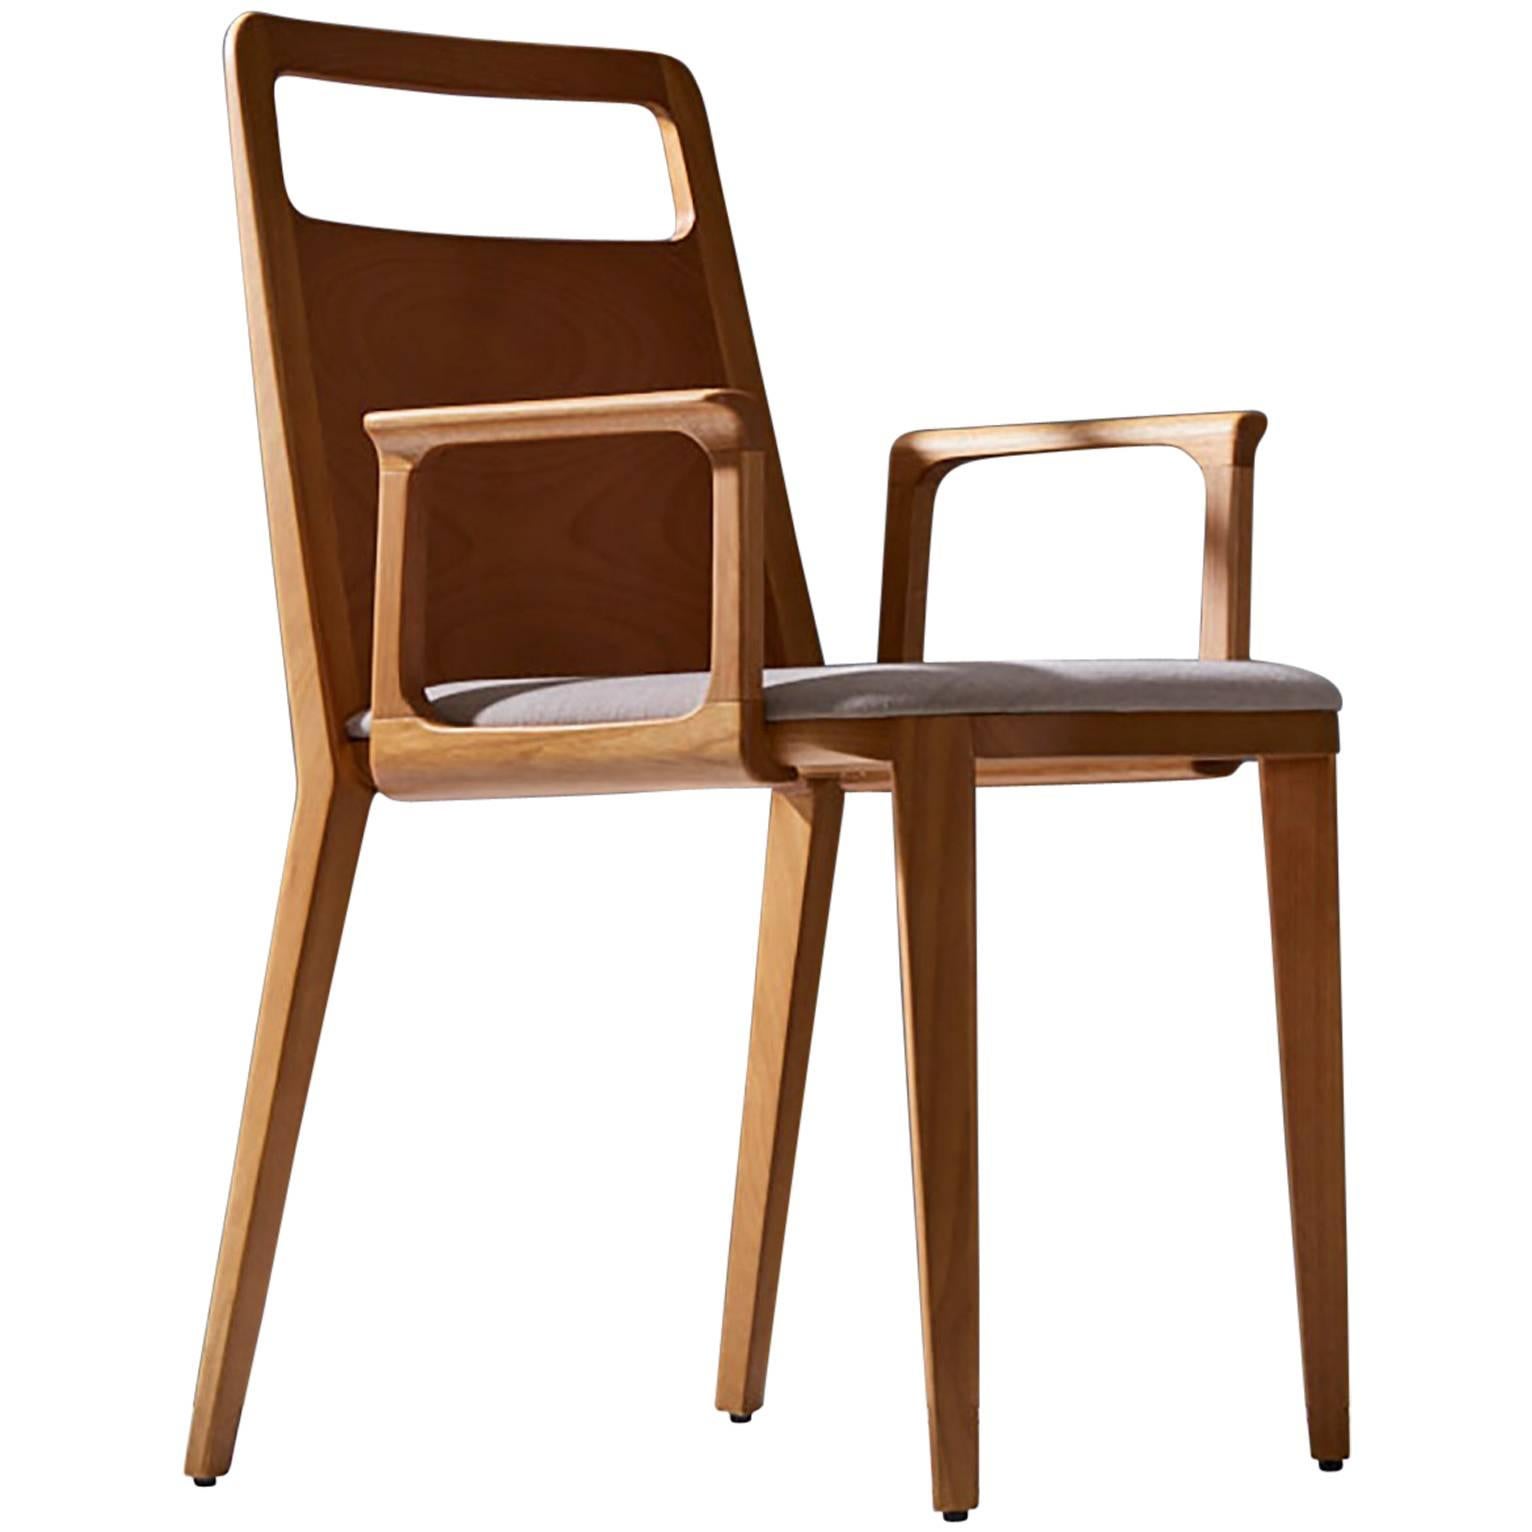 Chaise minimaliste en bois massif avec sièges tapissés de textiles ou de cuir